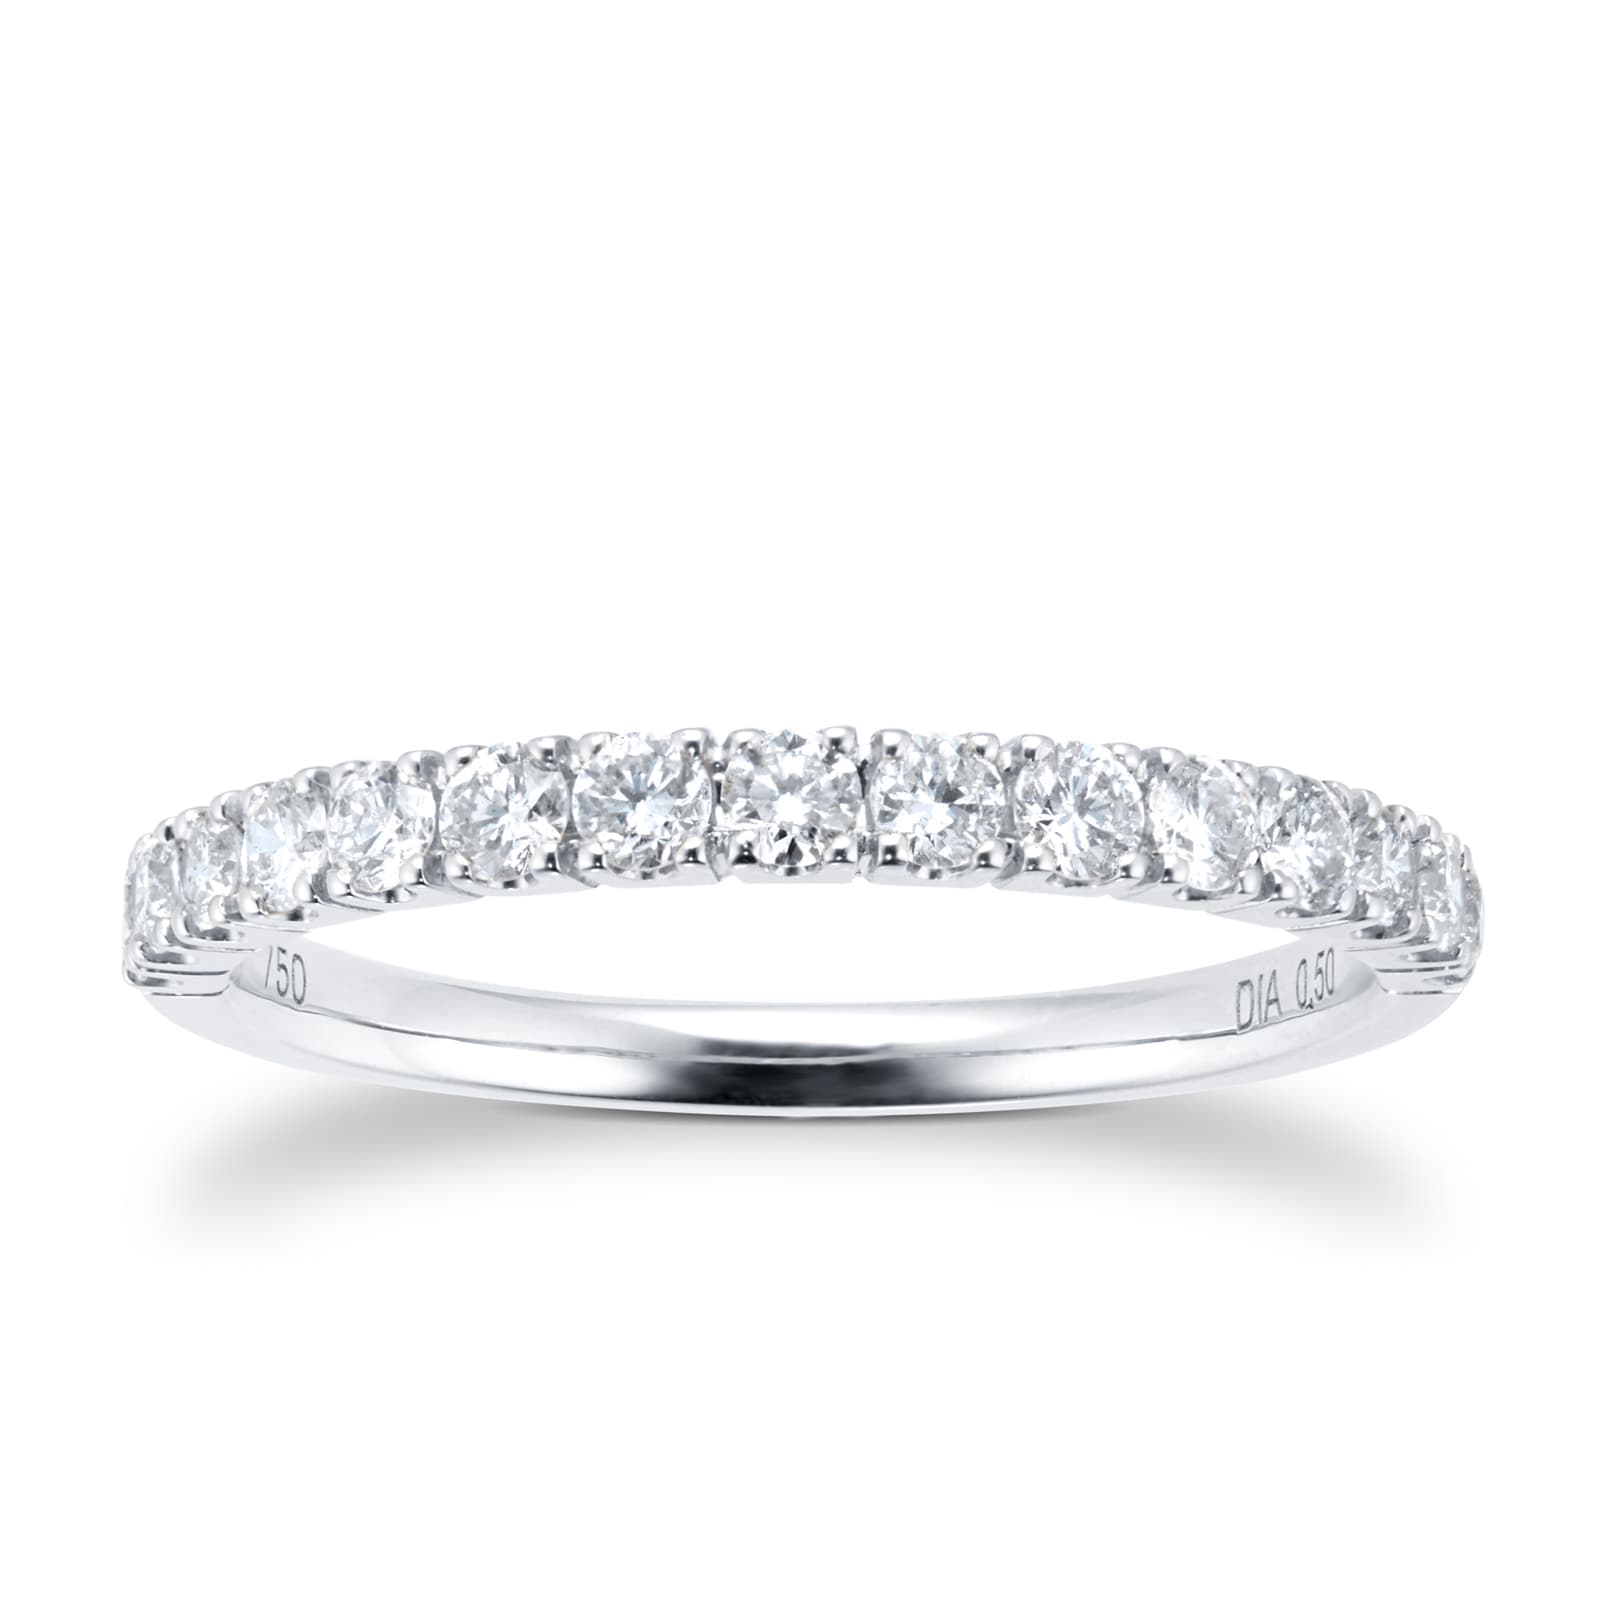 Rings, Gold & Silver Diamond Commitment & Promise Rings for Women & Men ...